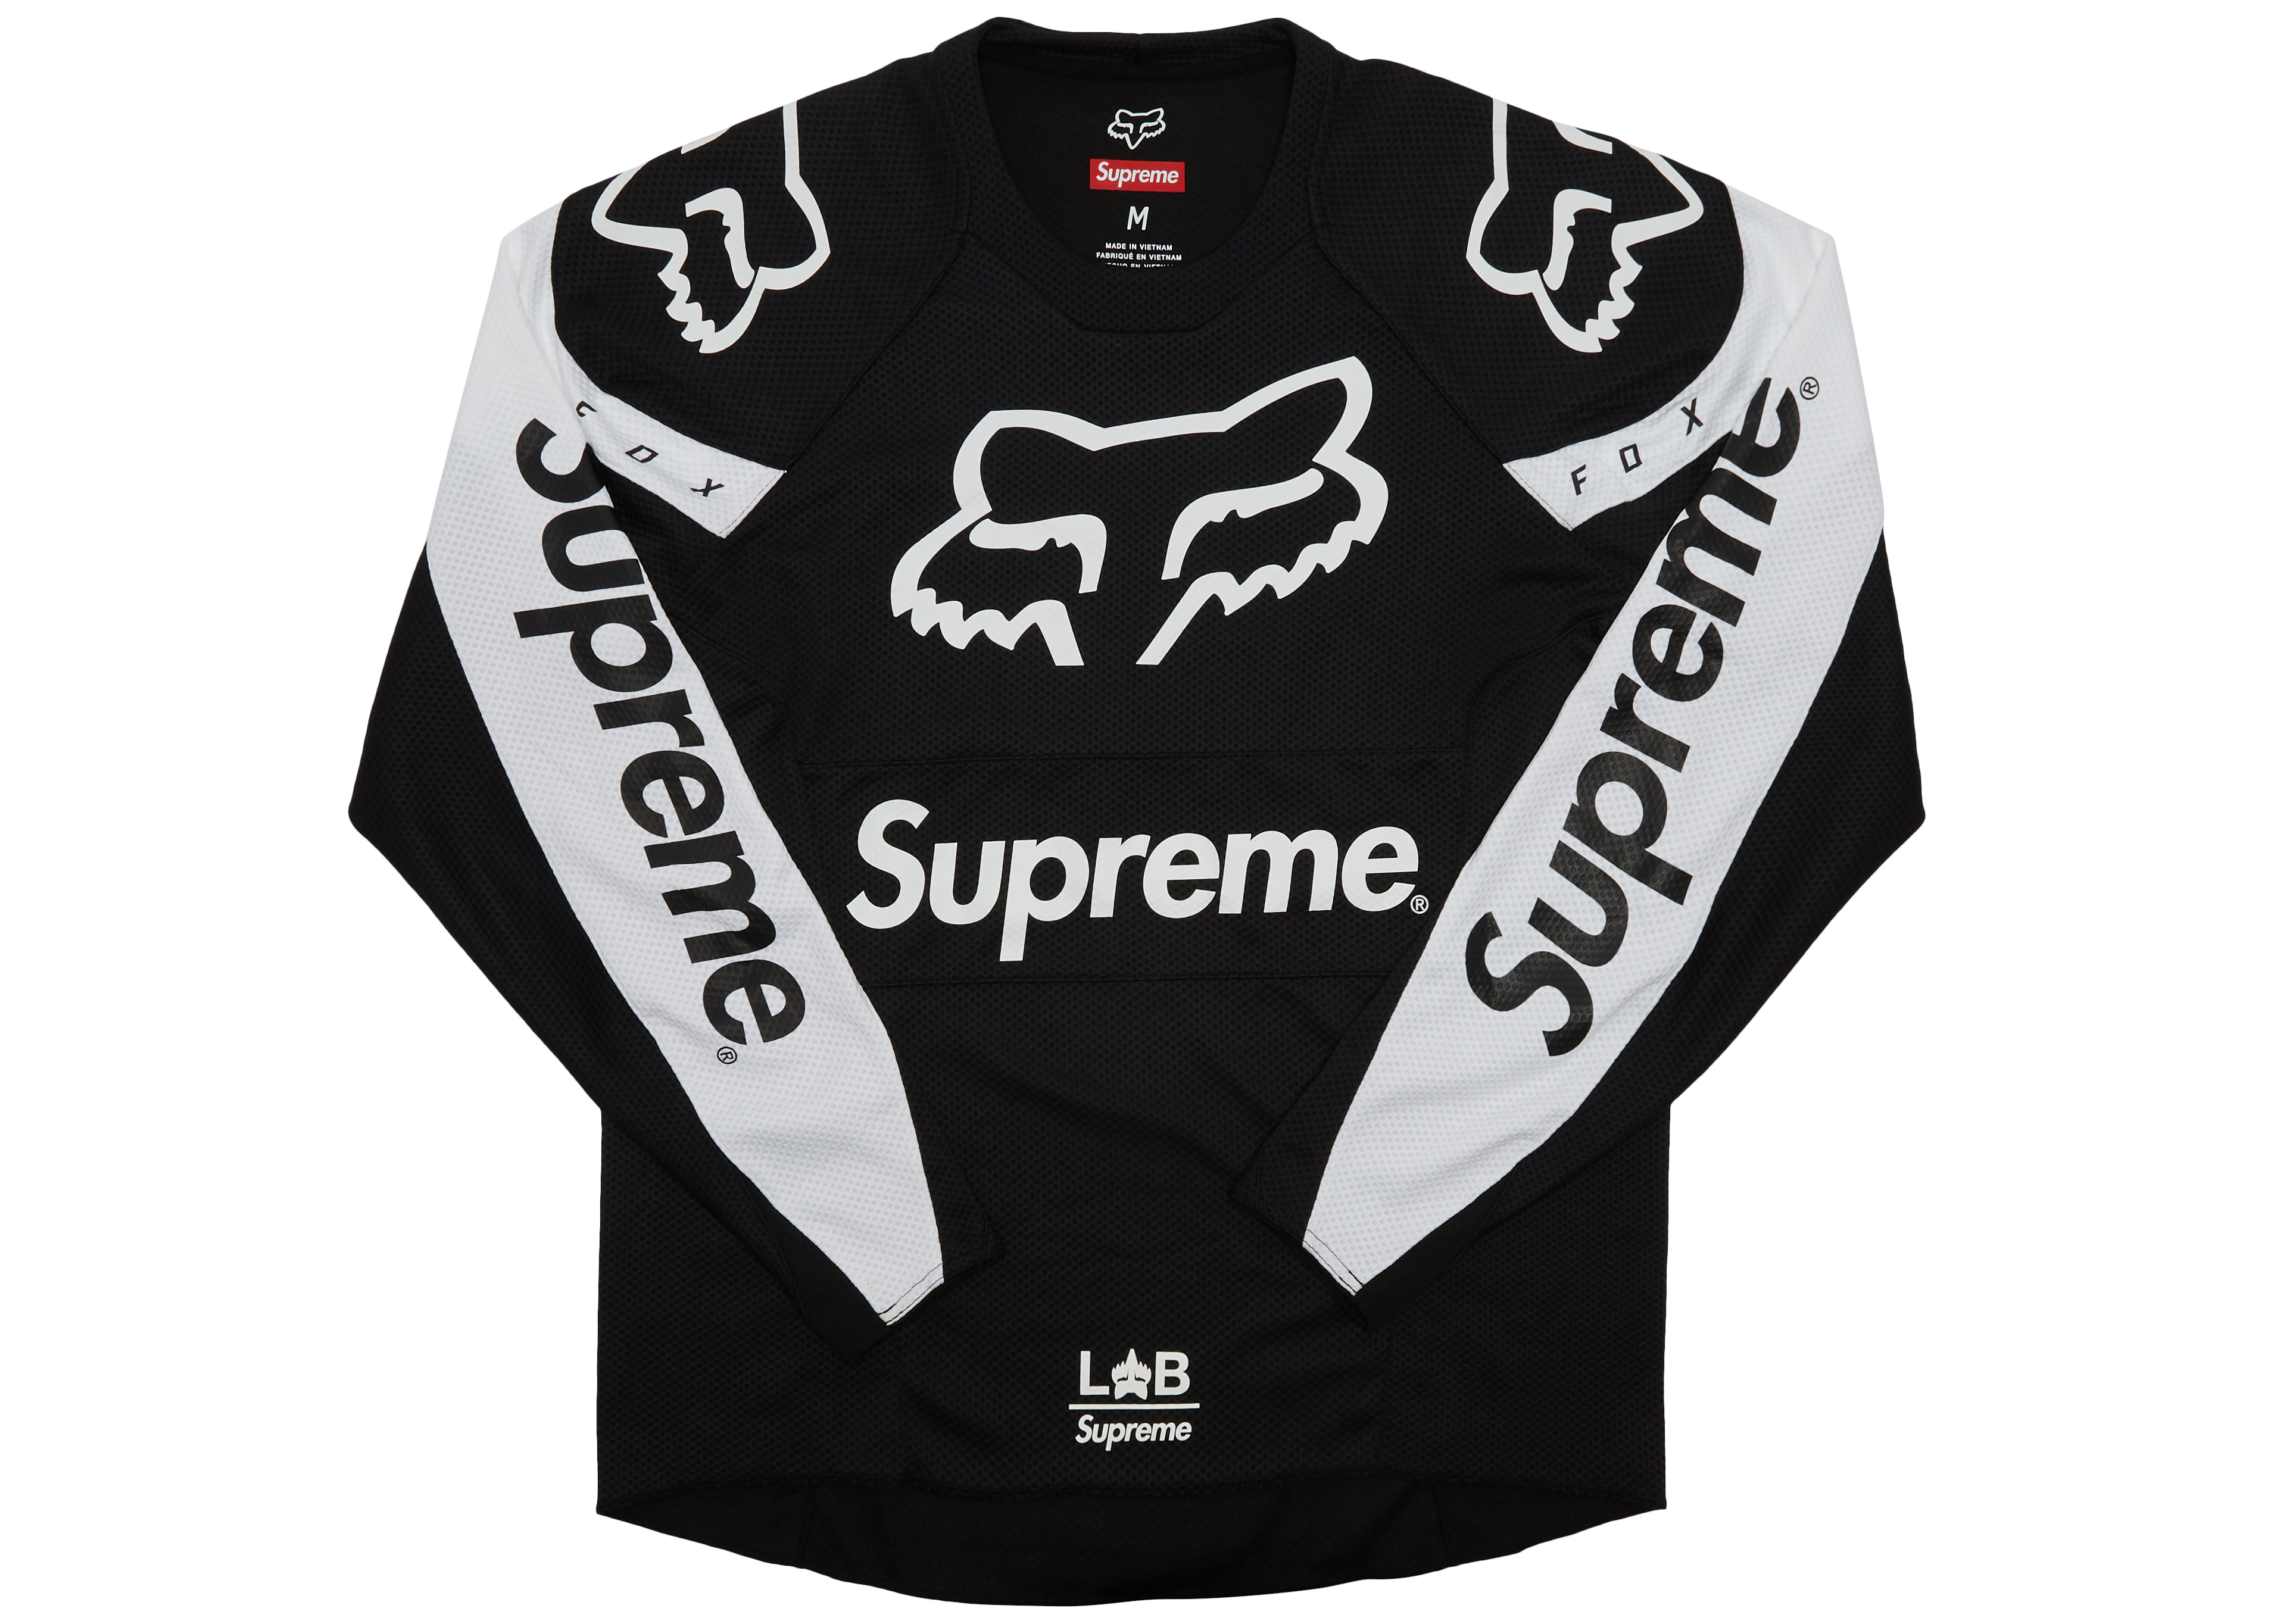 Sサイズ supreme fox racing moto jersey top